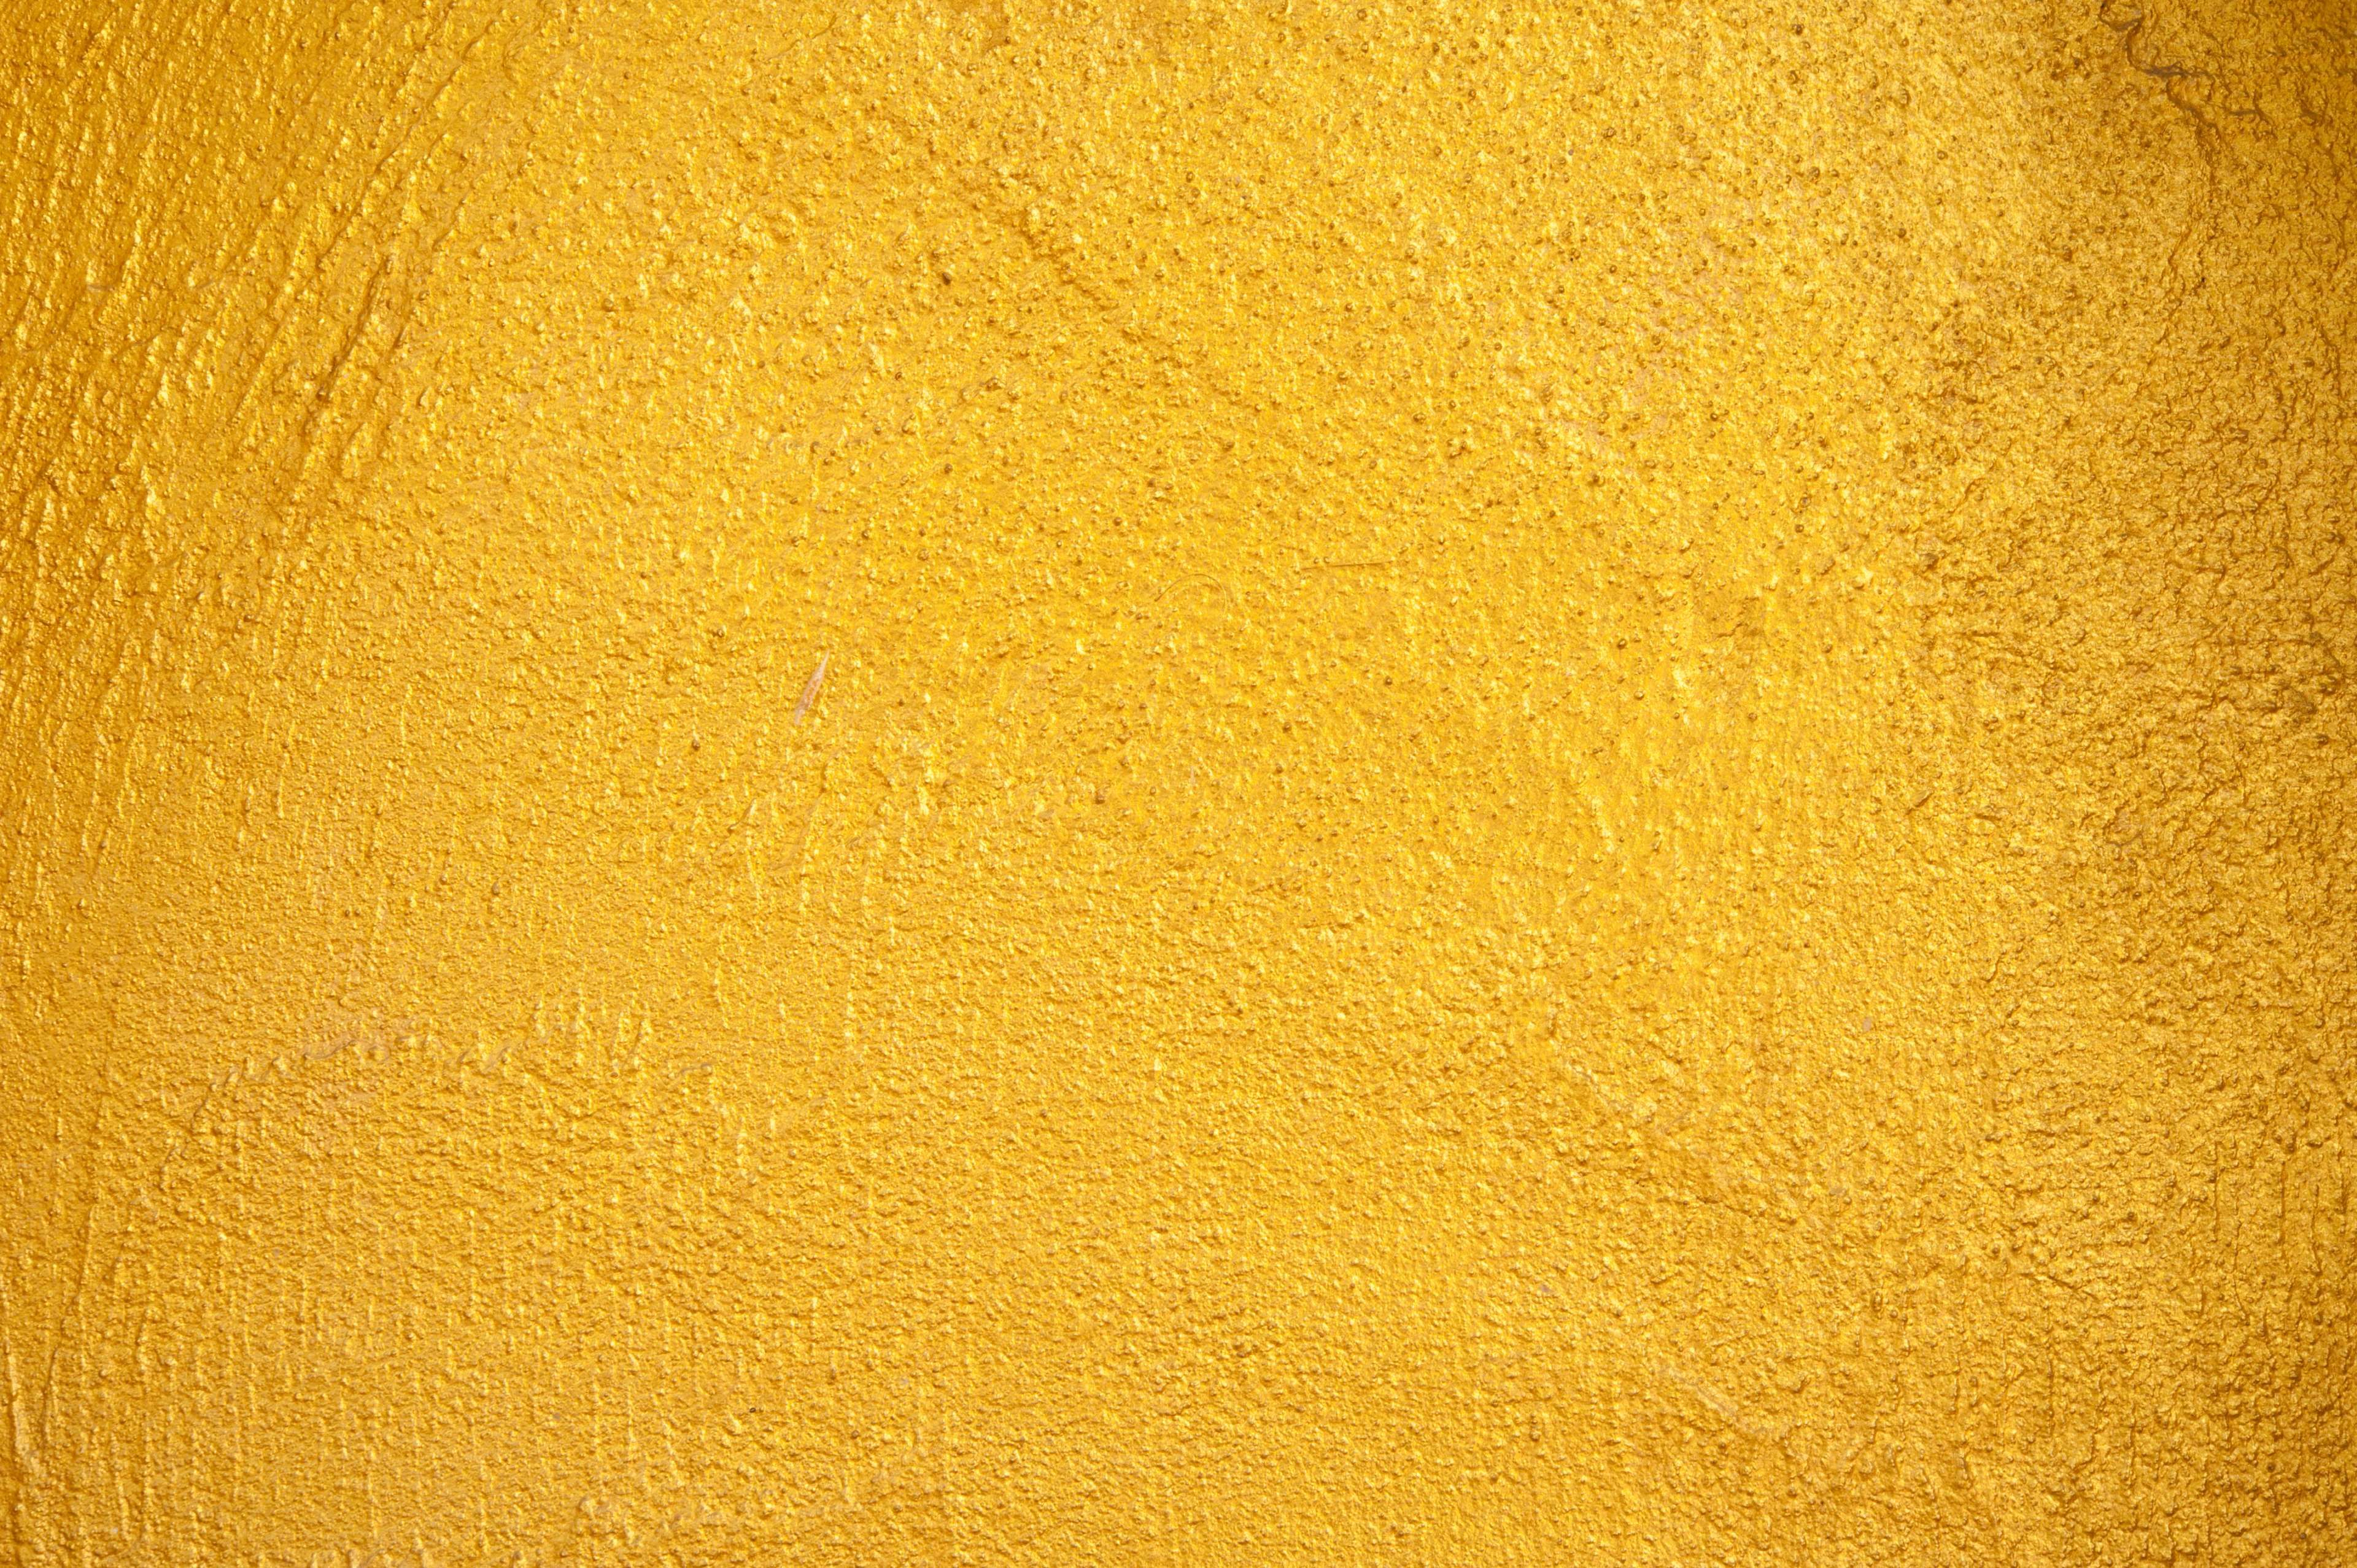 color #concrete #design #gold #paint #pattern #structure #surface ...